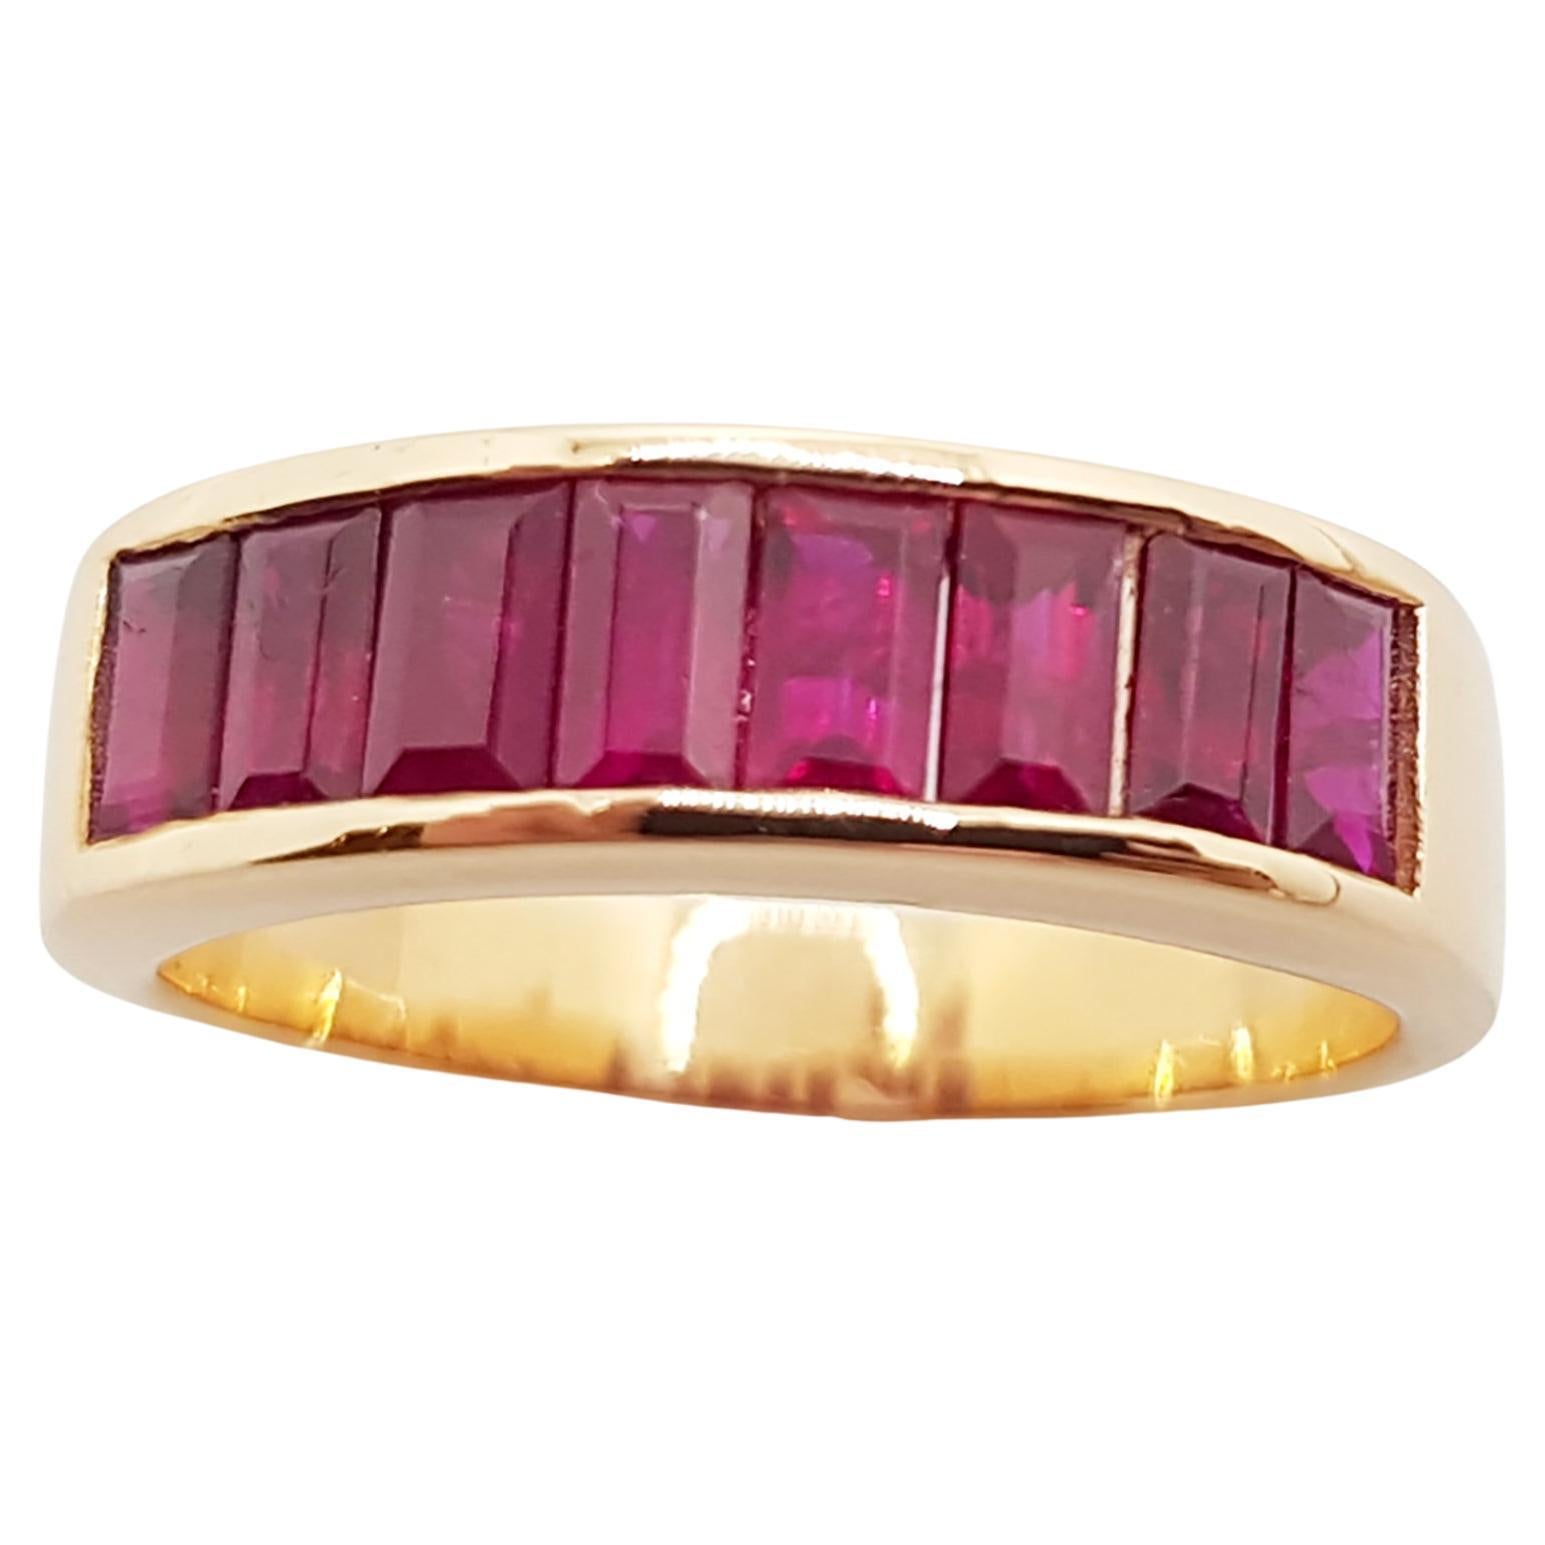 Ruby Ring Set in 18 Karat Rose Gold Settings